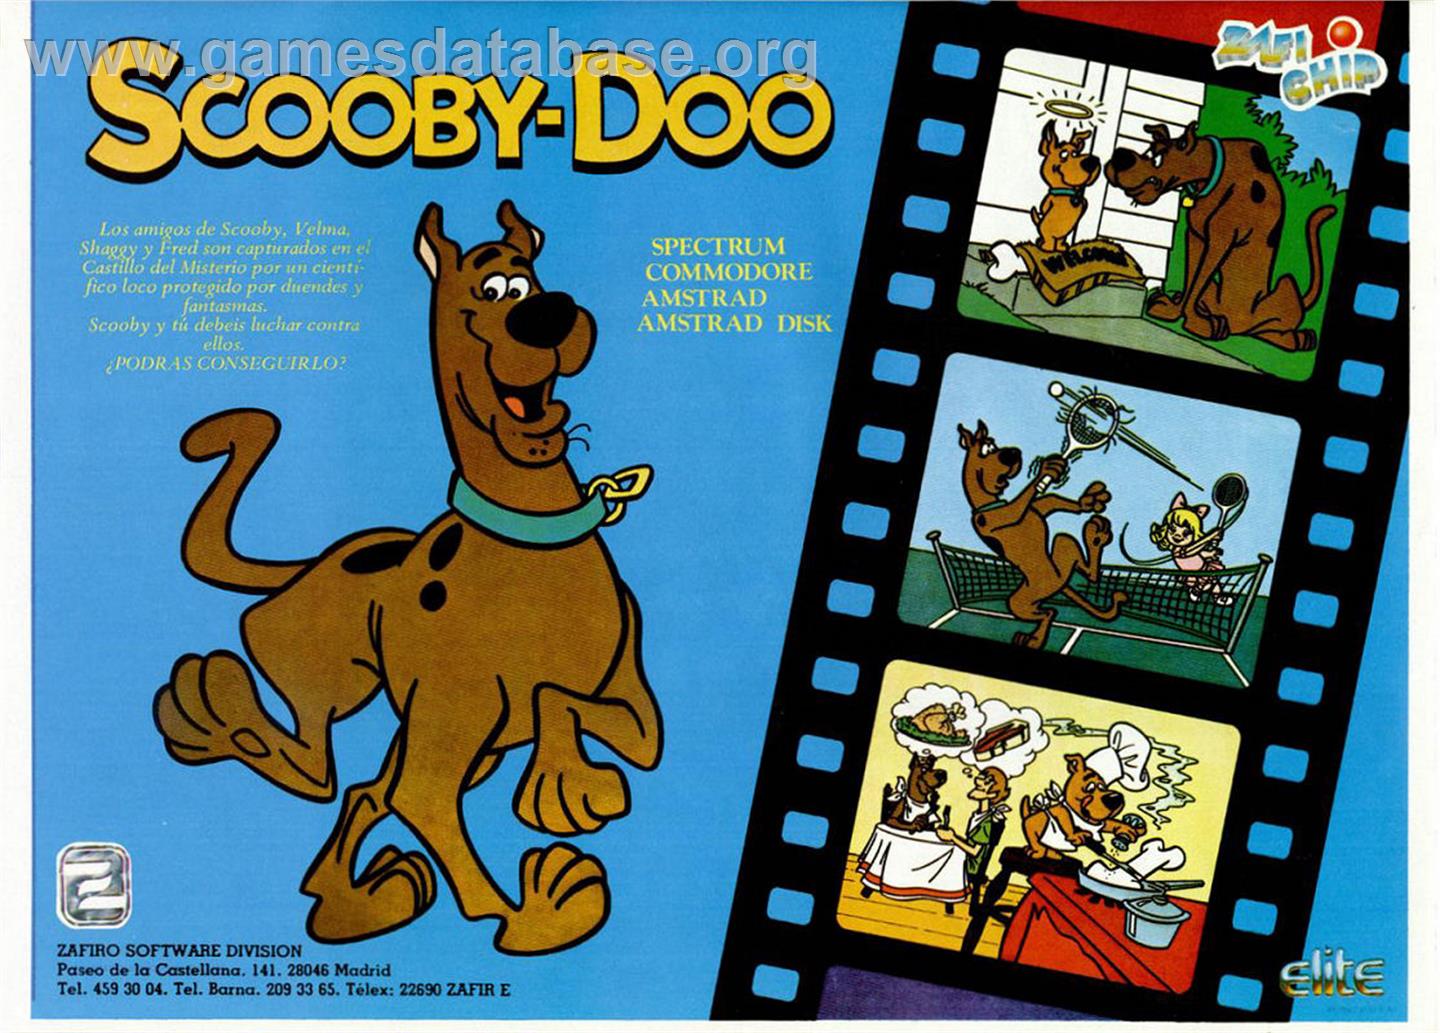 Scooby Doo - Sinclair ZX Spectrum - Artwork - Advert